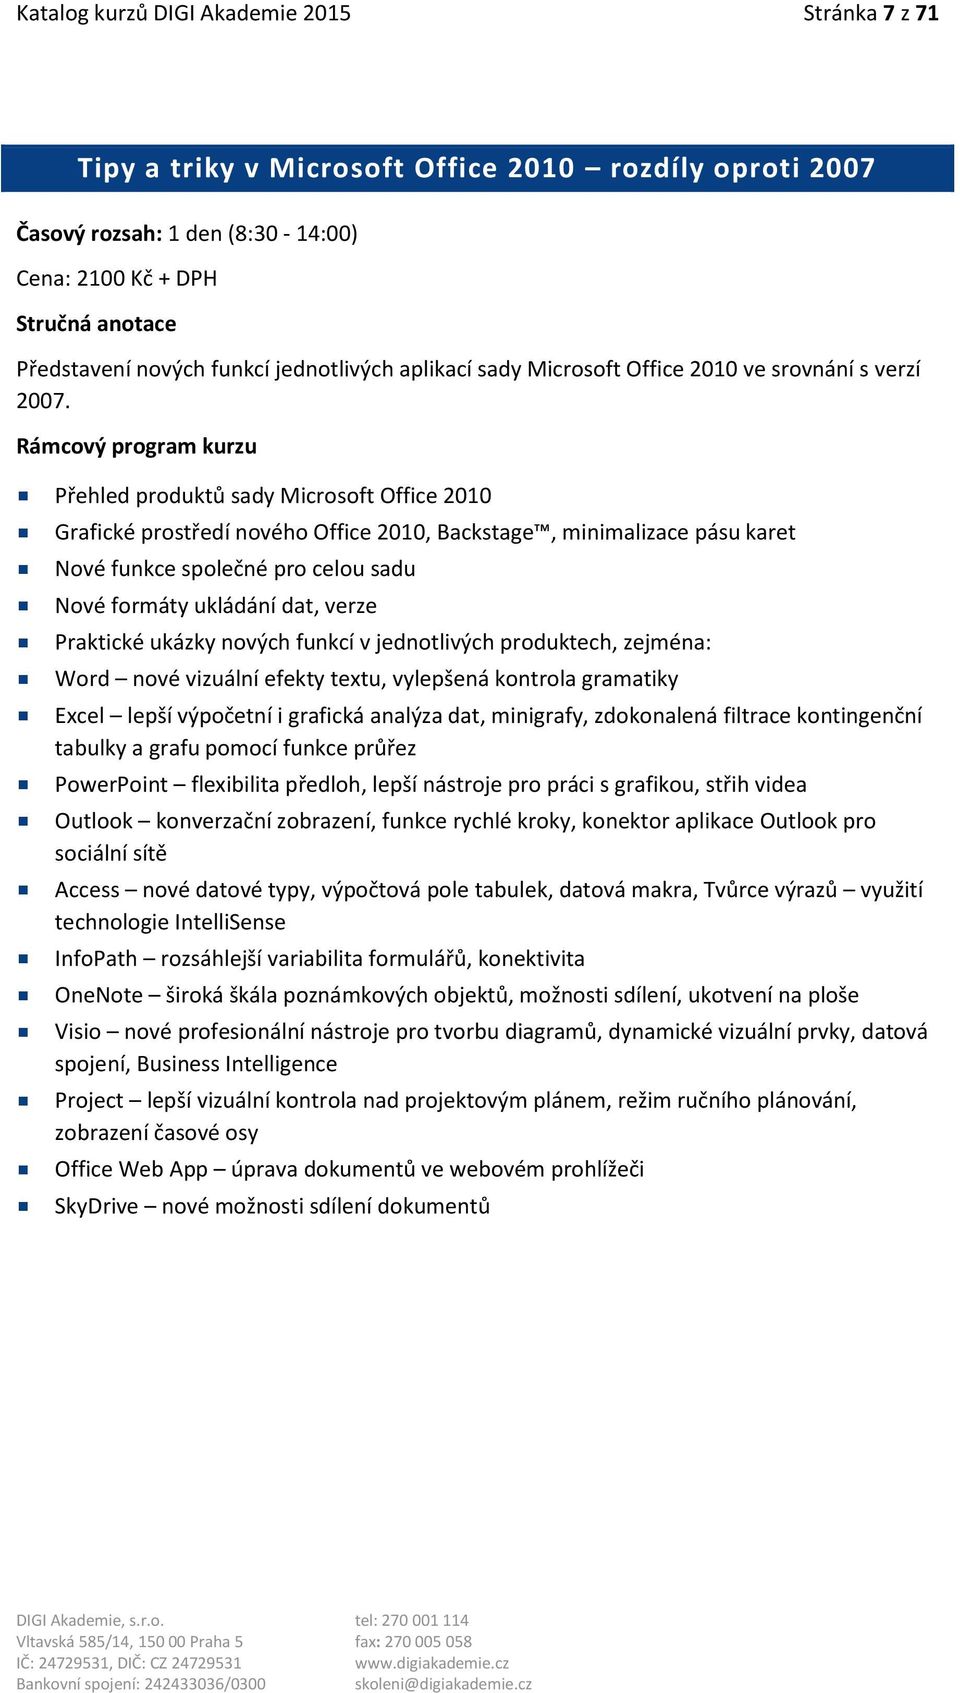 Přehled produktů sady Microsoft Office 2010 Grafické prostředí nového Office 2010, Backstage, minimalizace pásu karet Nové funkce společné pro celou sadu Nové formáty ukládání dat, verze Praktické